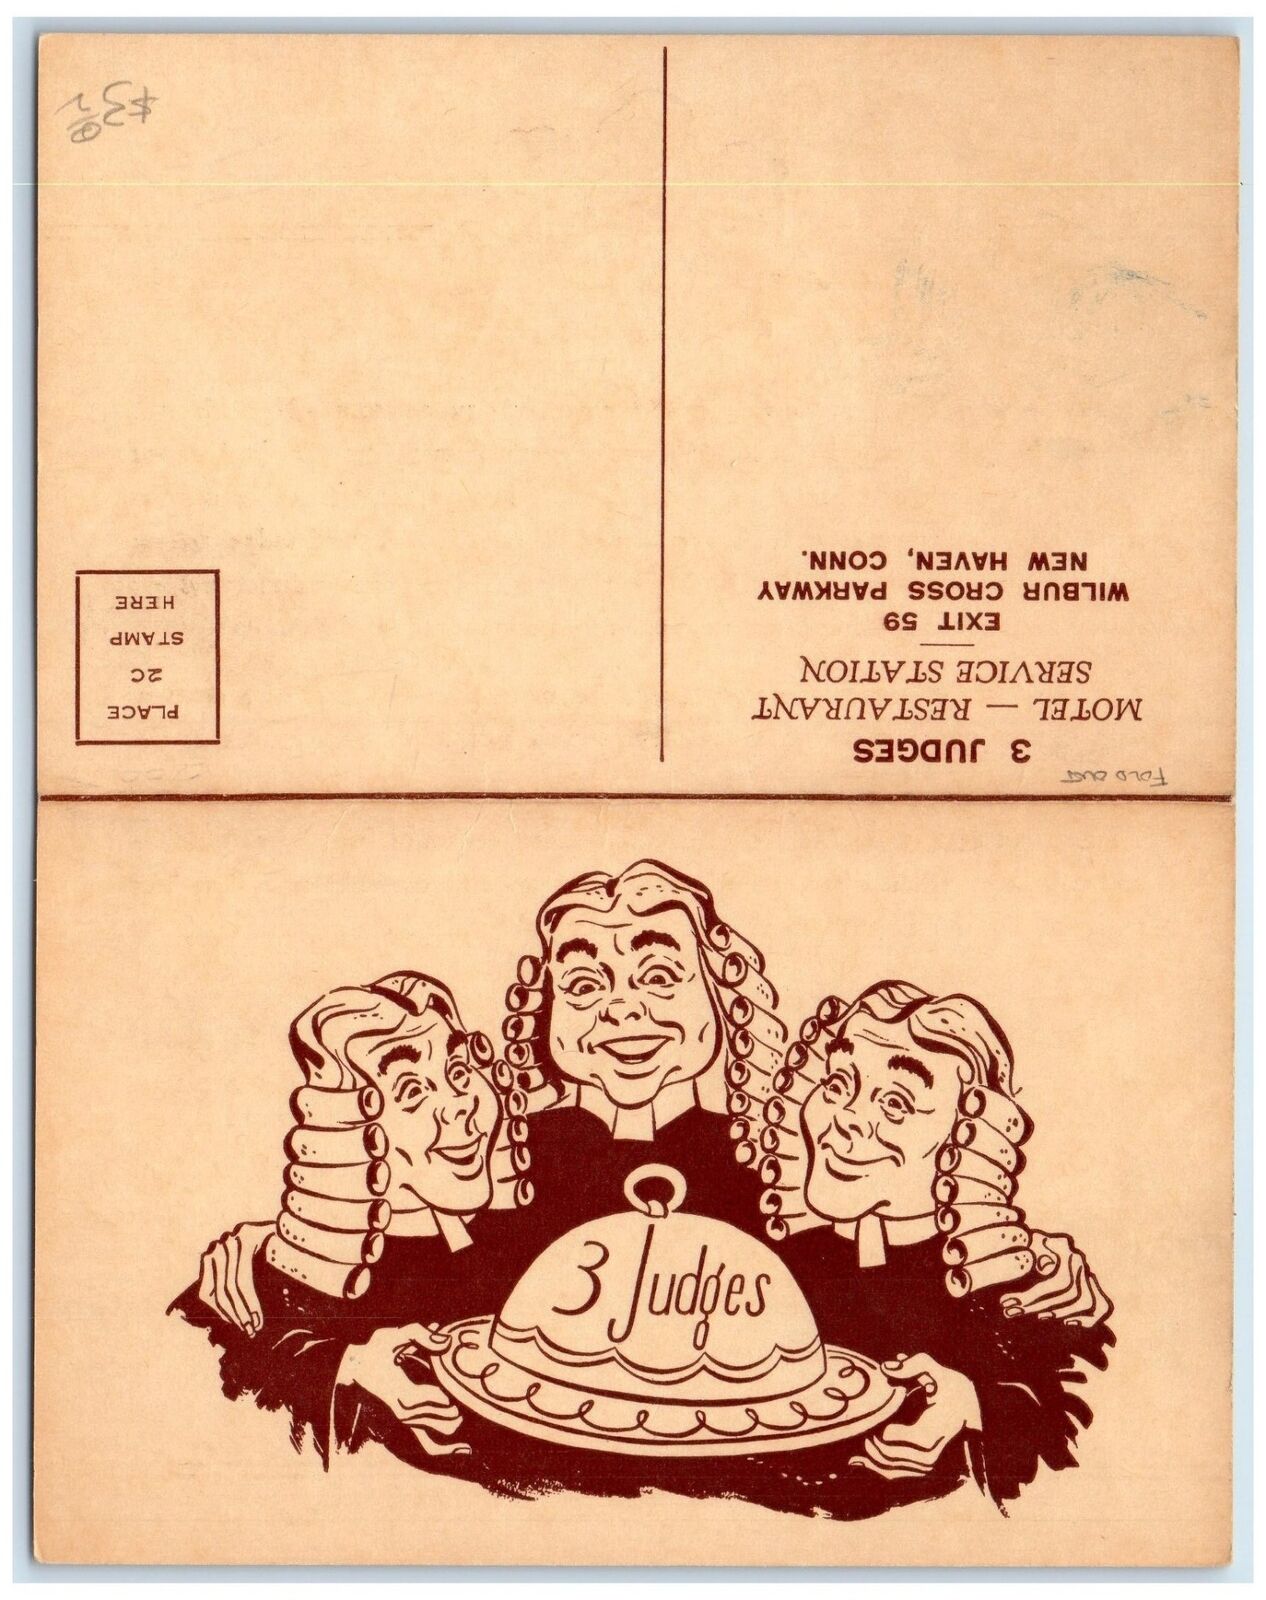 c1910s 3 Judges Motel Restaurant Advertisement New Haven Connecticut CT Postcard